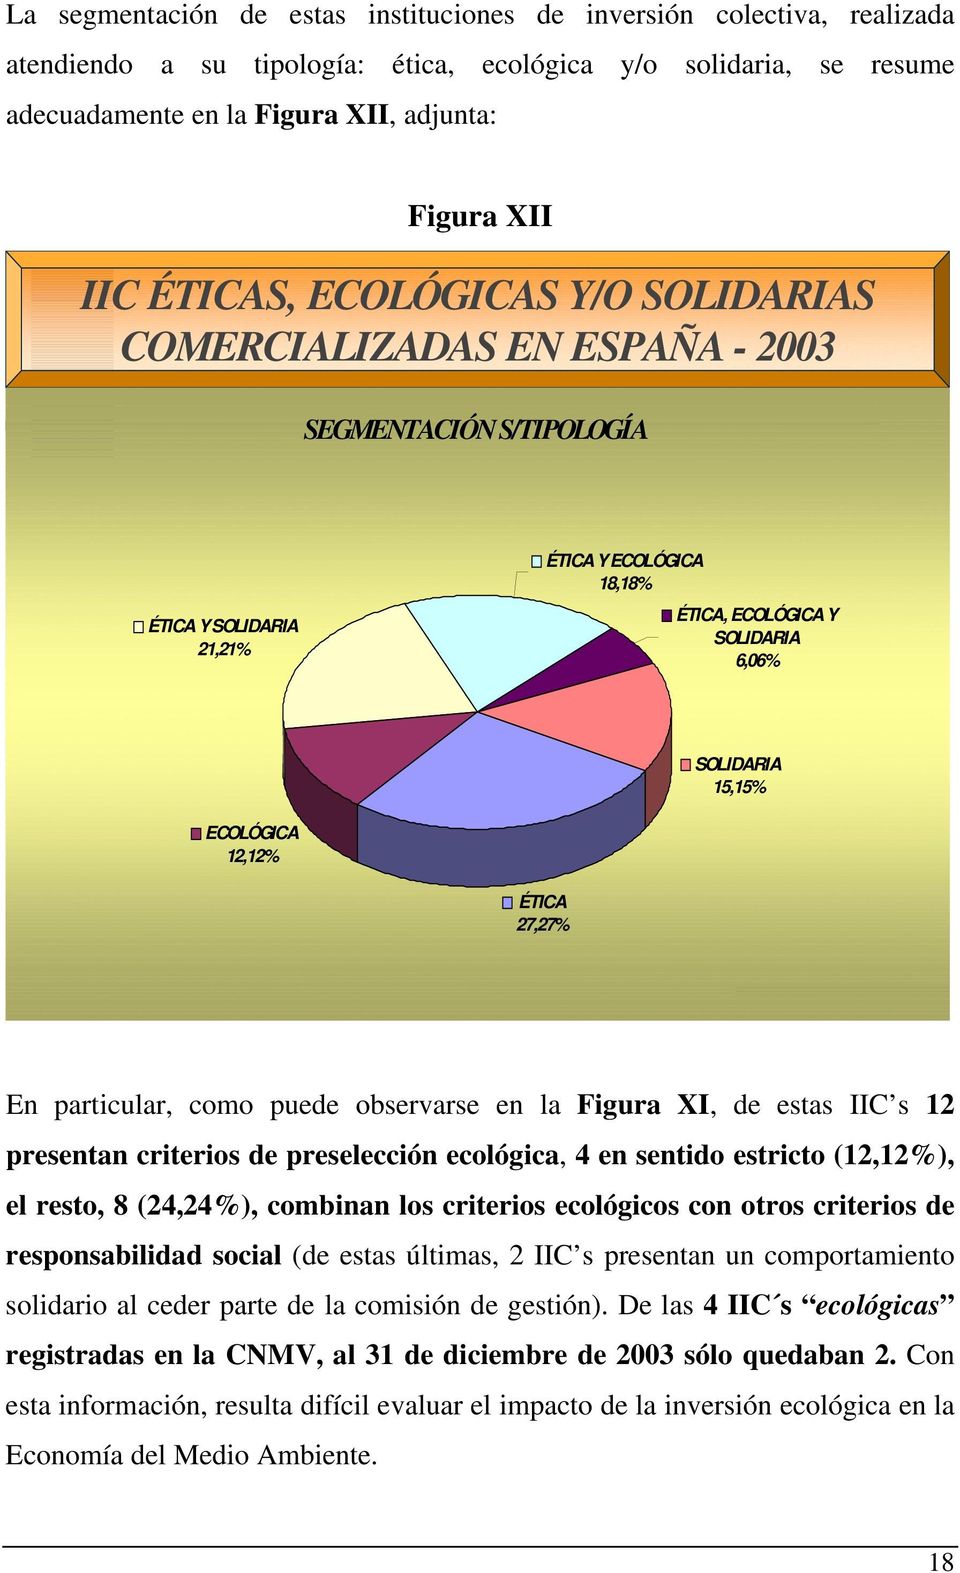 ECOLÓGICA 12,12% ÉTICA 27,27% En particular, como puede observarse en la Figura XI, de estas IIC s 12 presentan criterios de preselección ecológica, 4 en sentido estricto (12,12%), el resto, 8